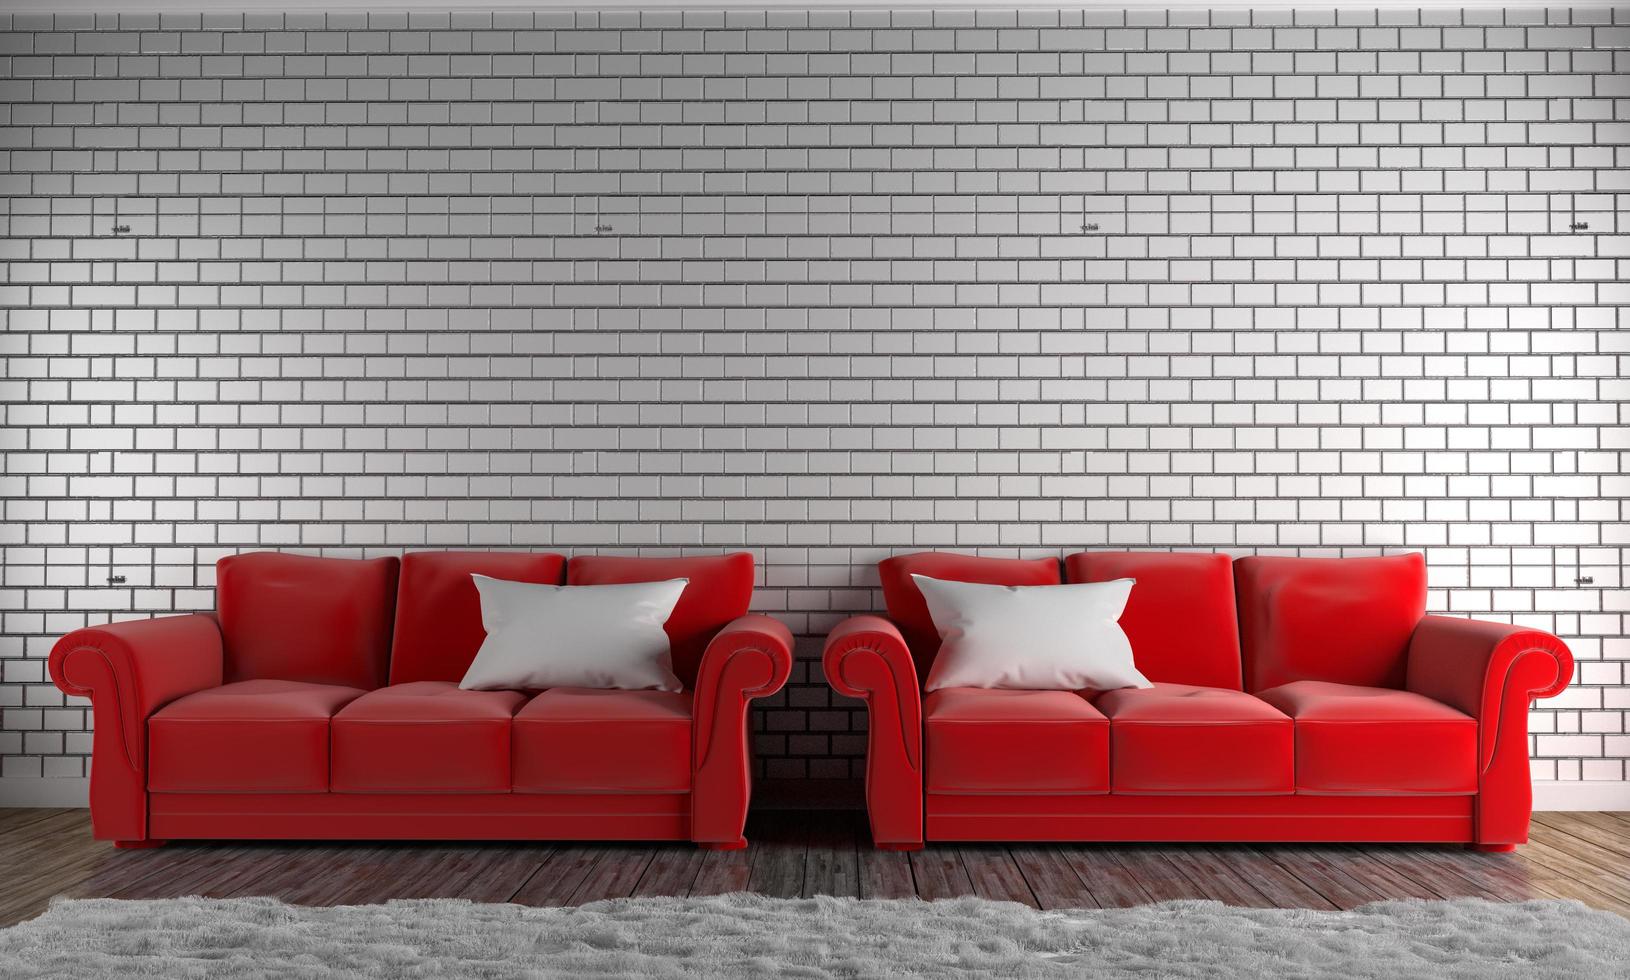 rode banken en kussens, tapijt, houten vloer op lege bakstenen muur. 3D-rendering foto